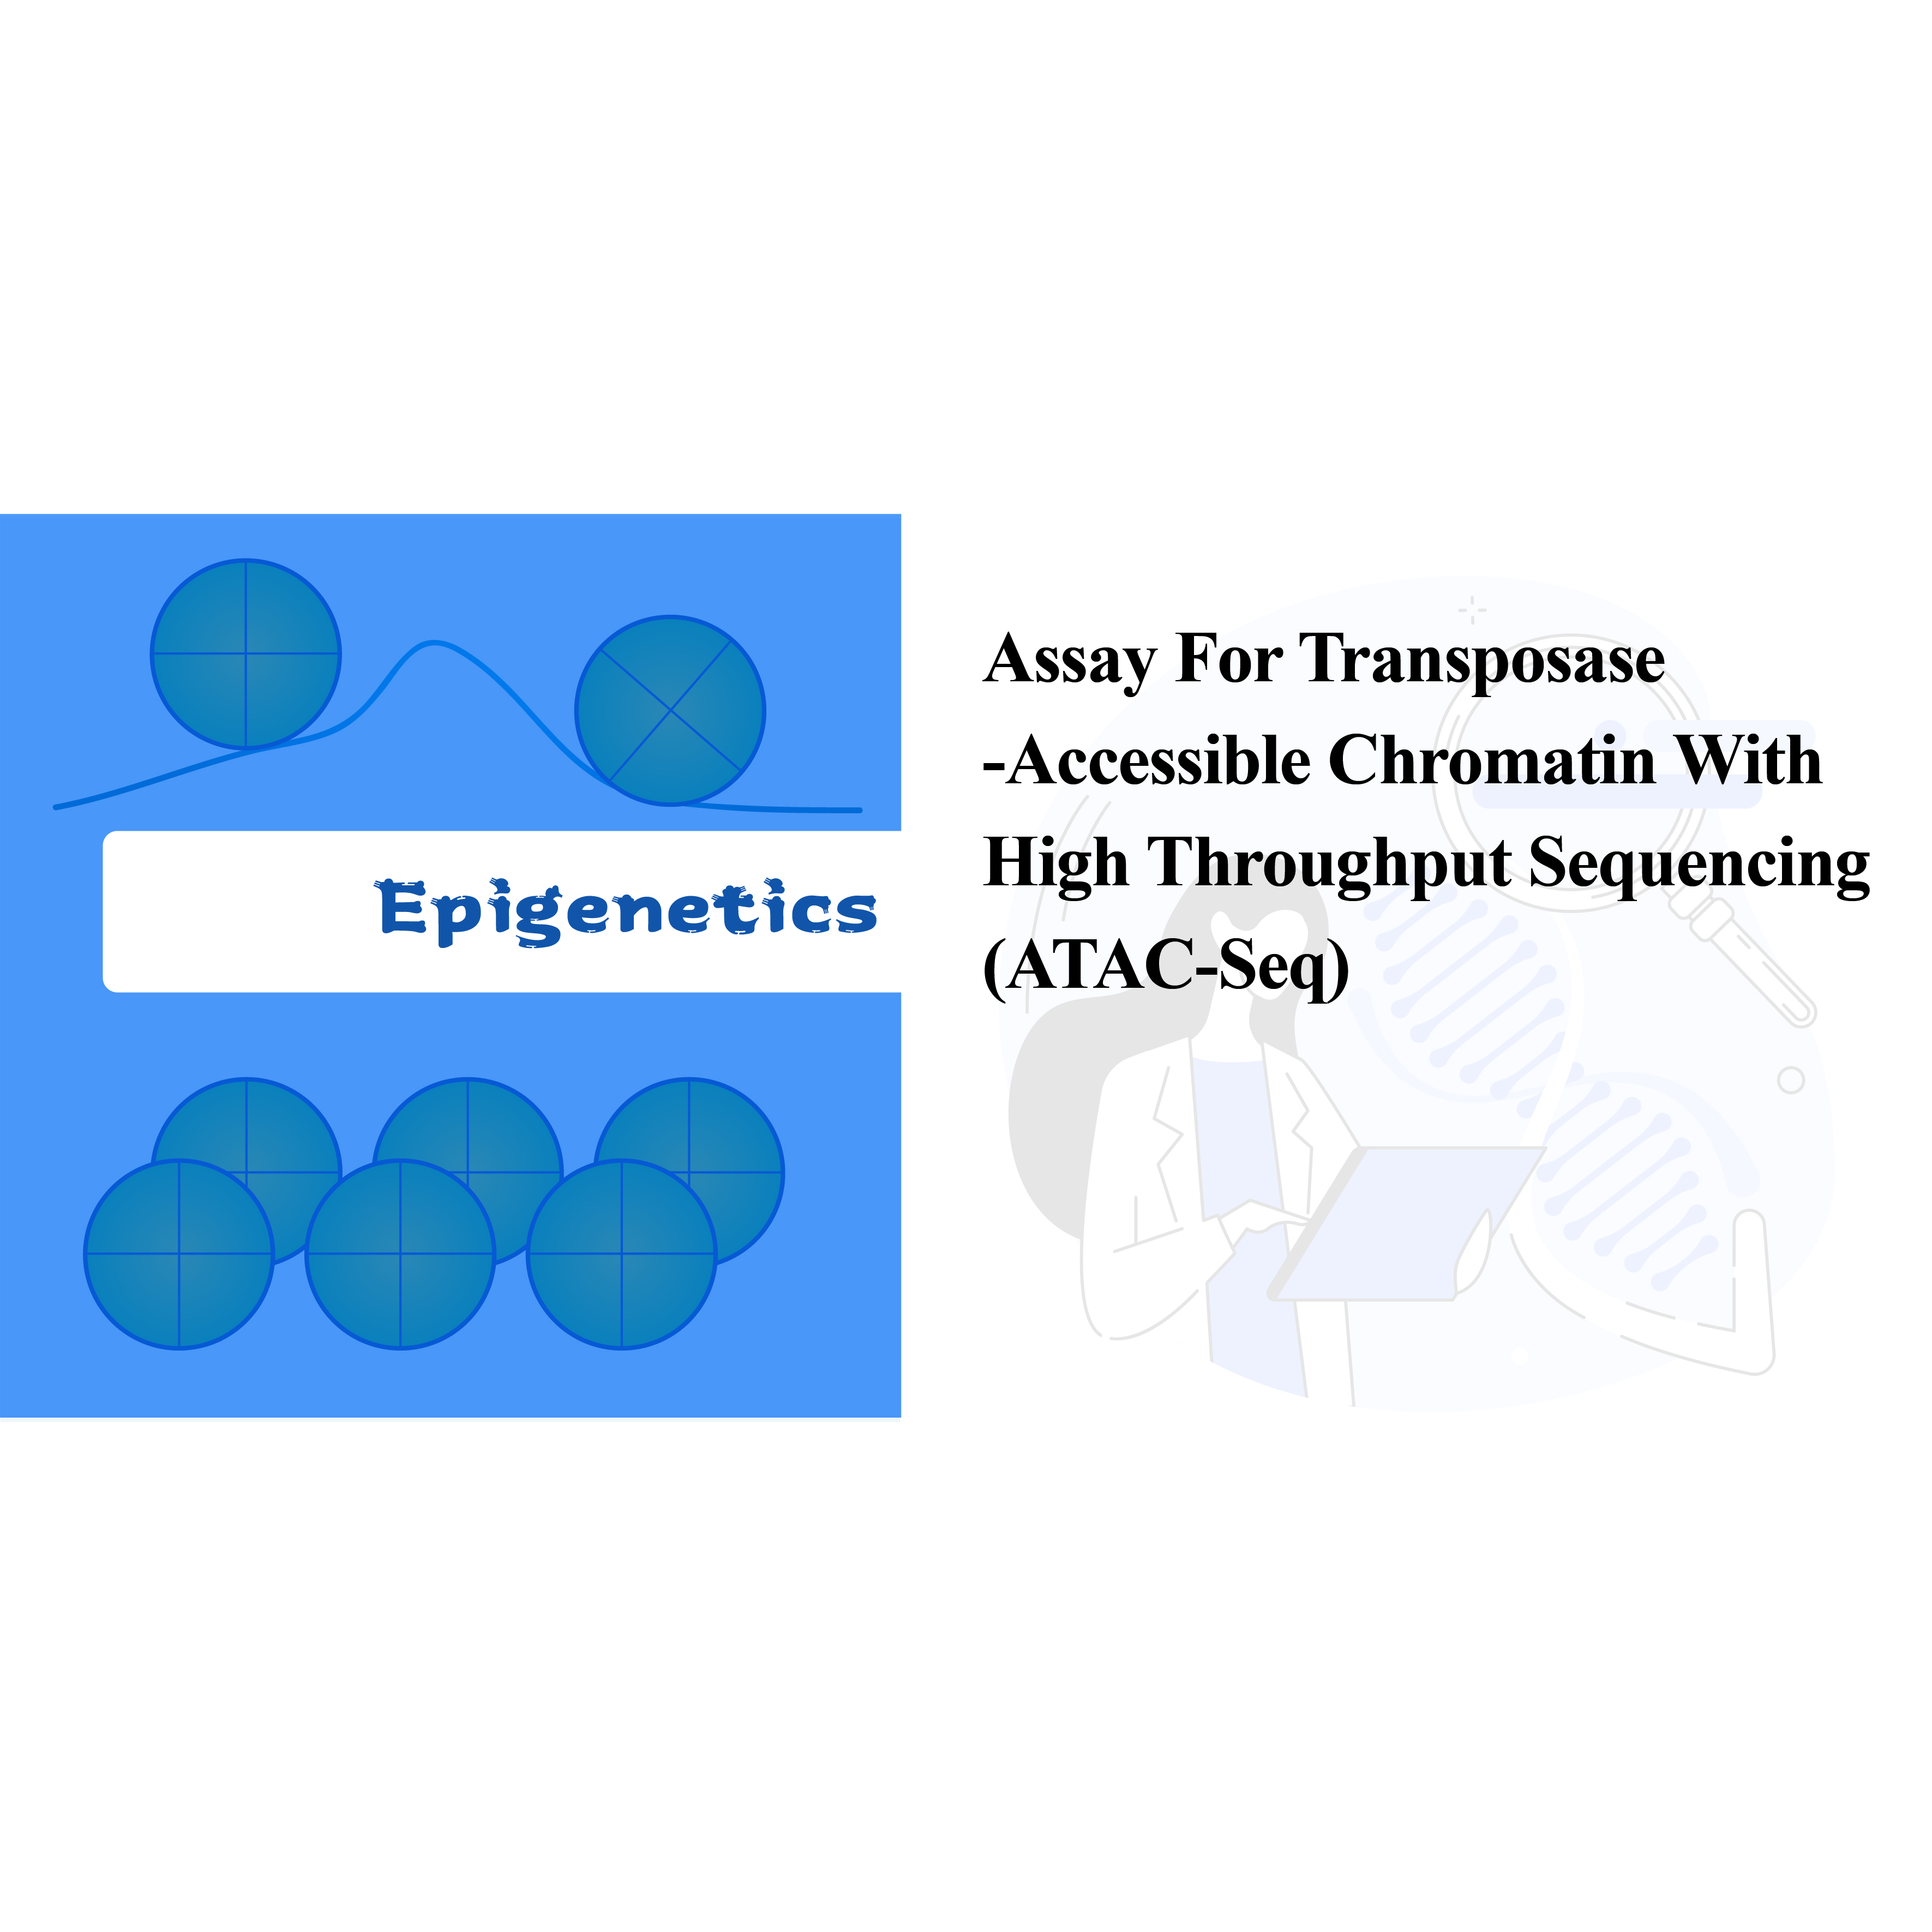 Тест за хроматин приступачан транспозази са секвенцирањем високог протока (АТАЦ-сек)